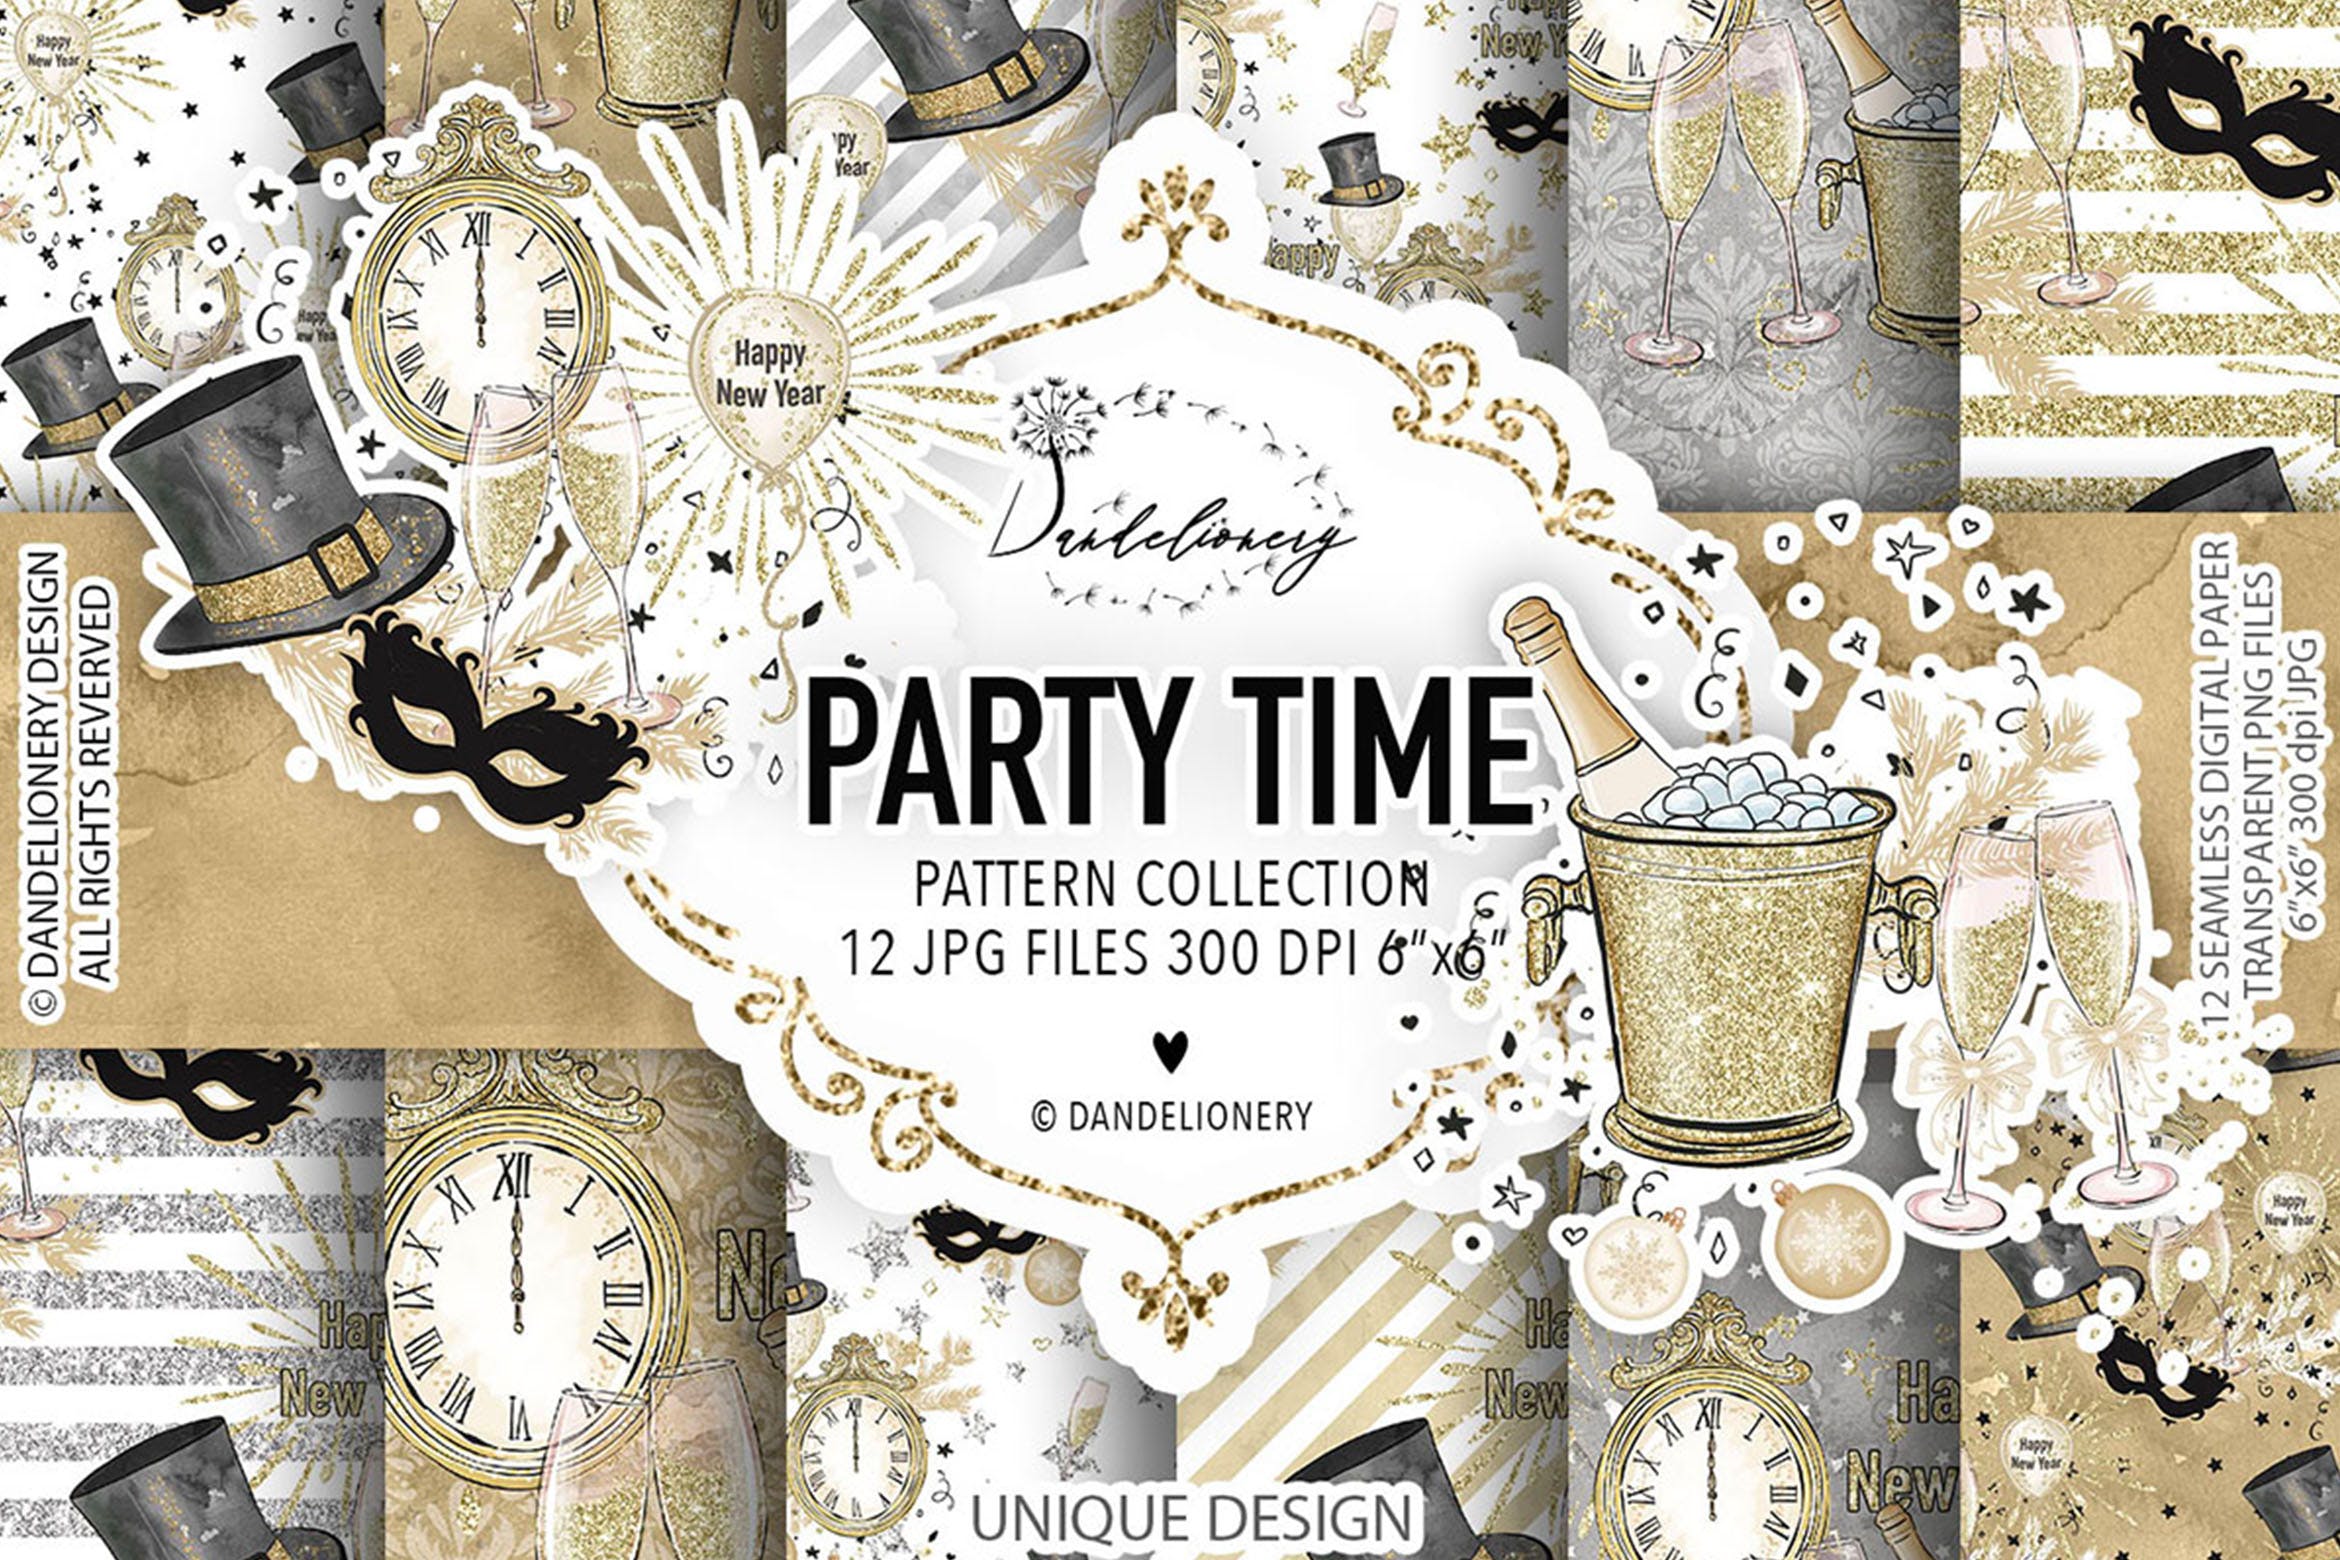 派对时光水彩手绘数码纸张图案背景蚂蚁素材精选 Party Time digital paper pack插图